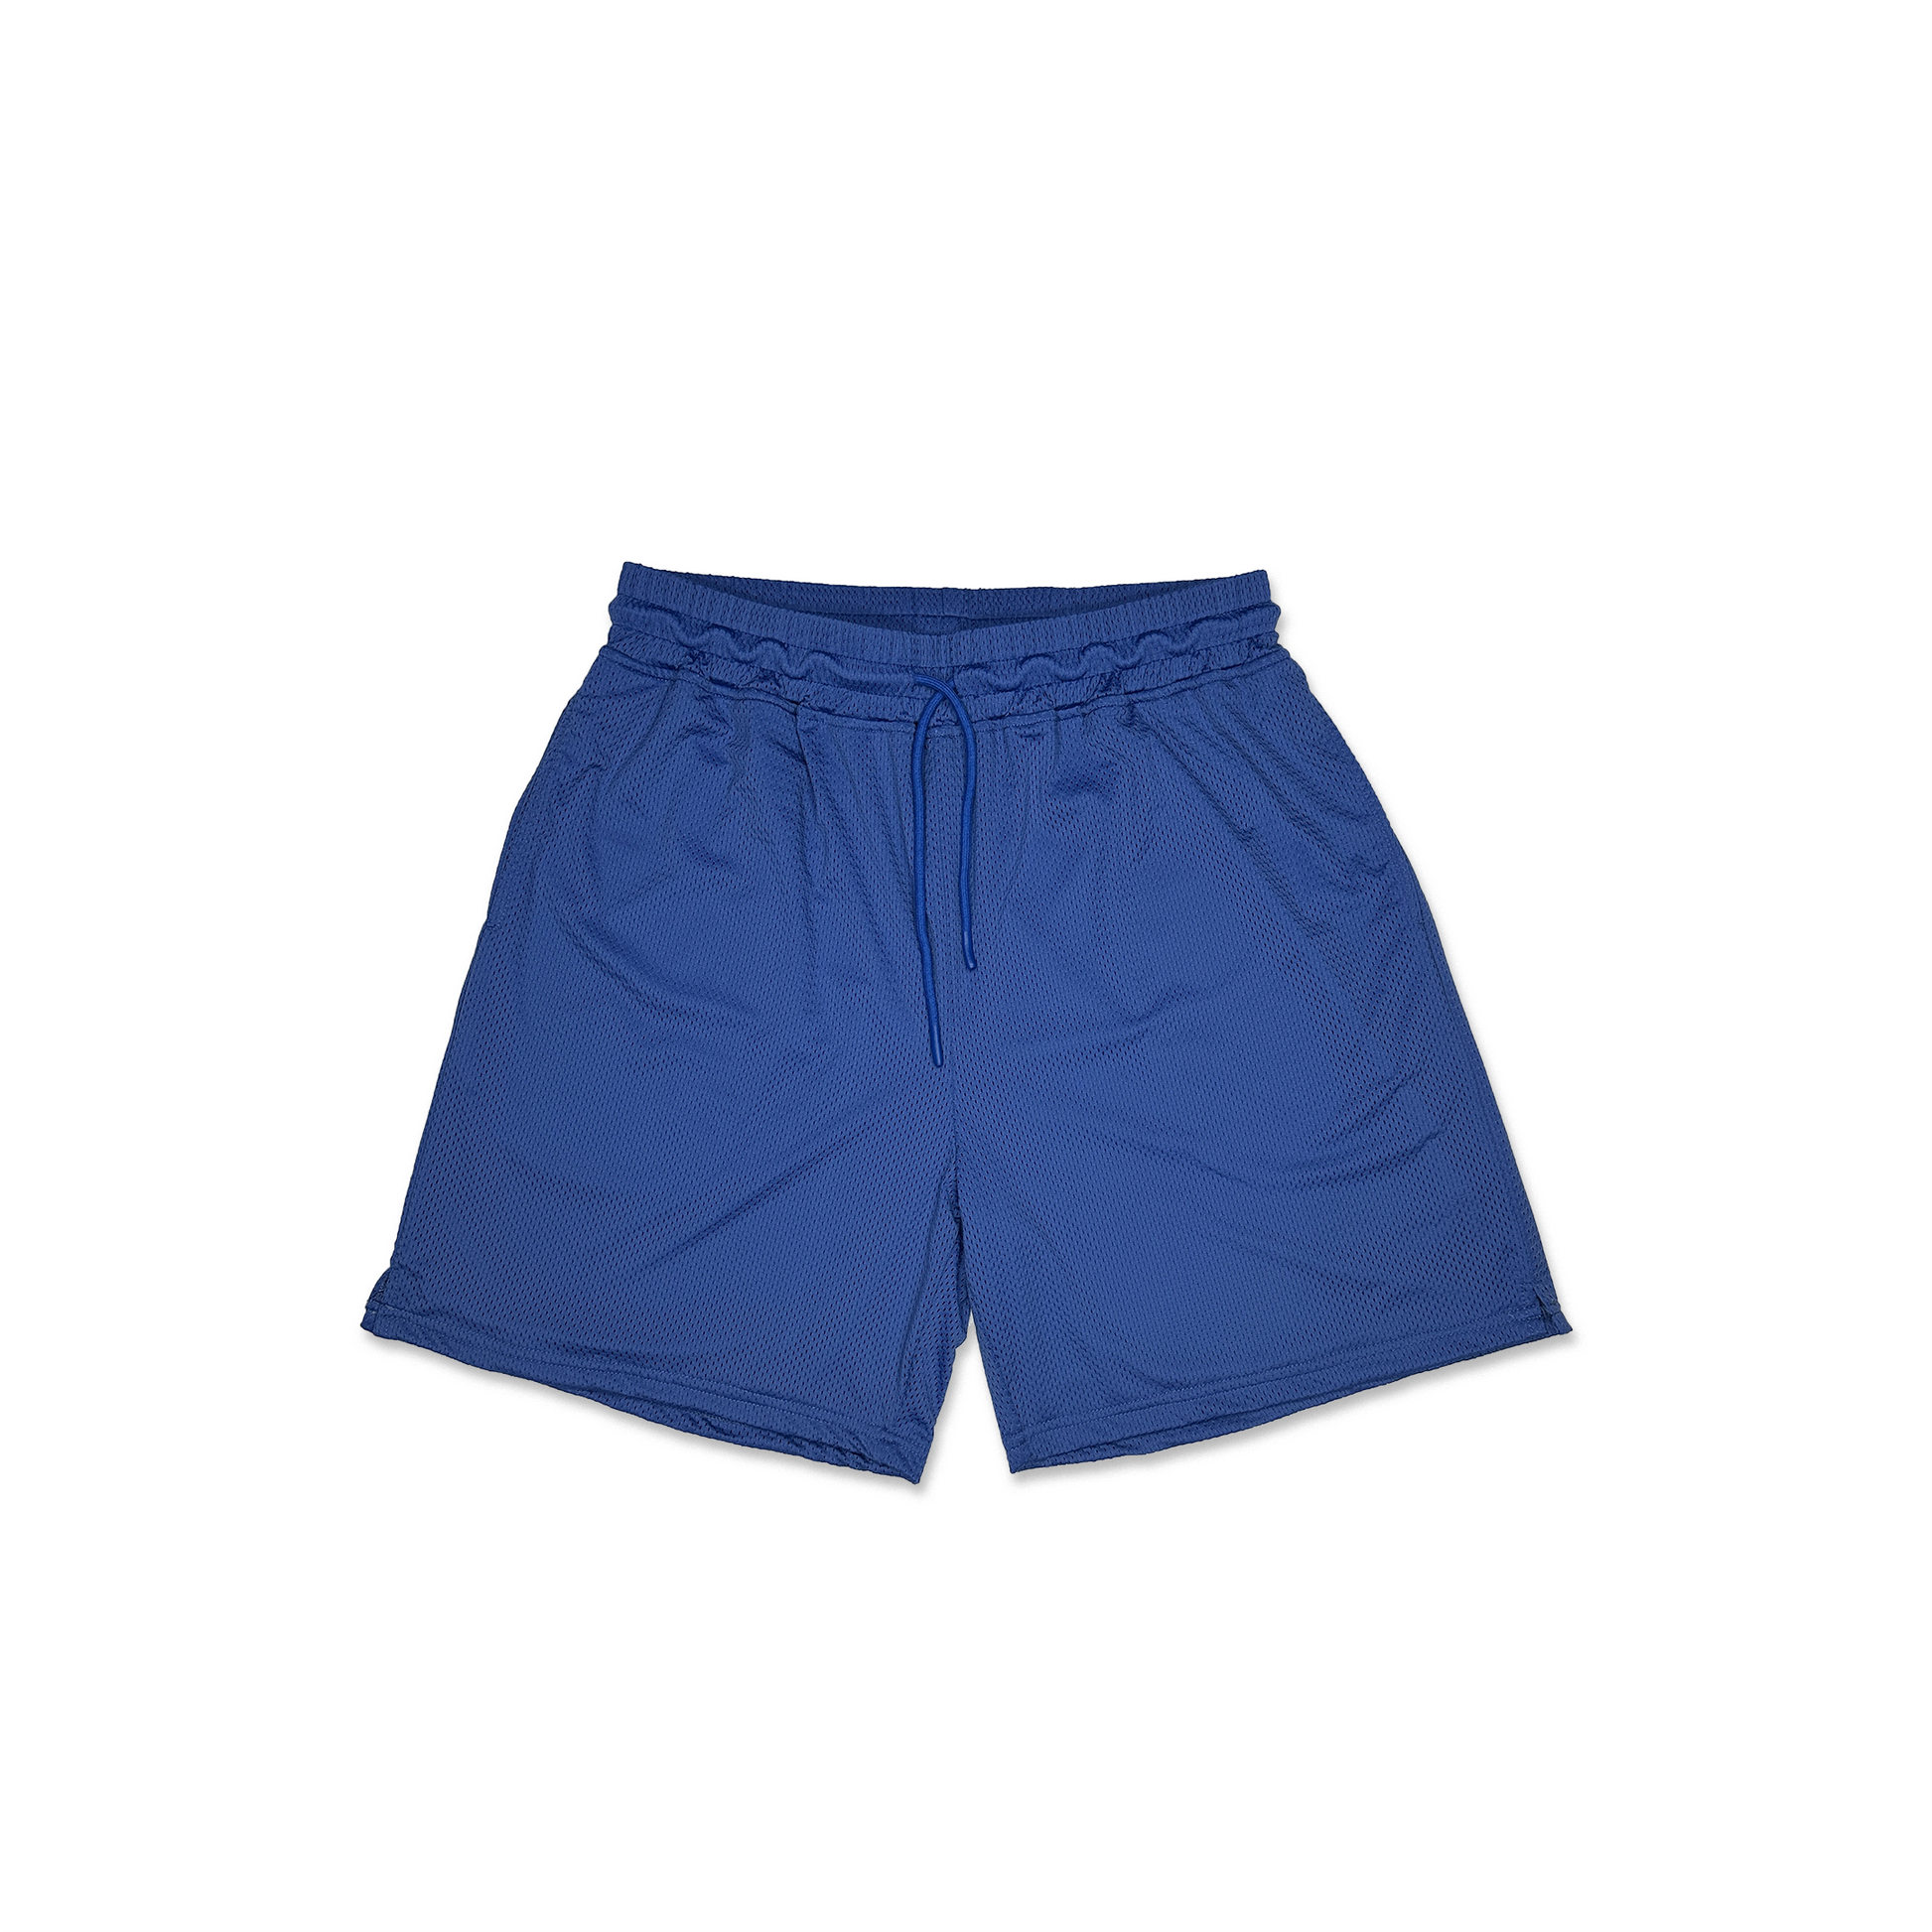 LNCL Reversible Mesh Shorts Royal Blue / White